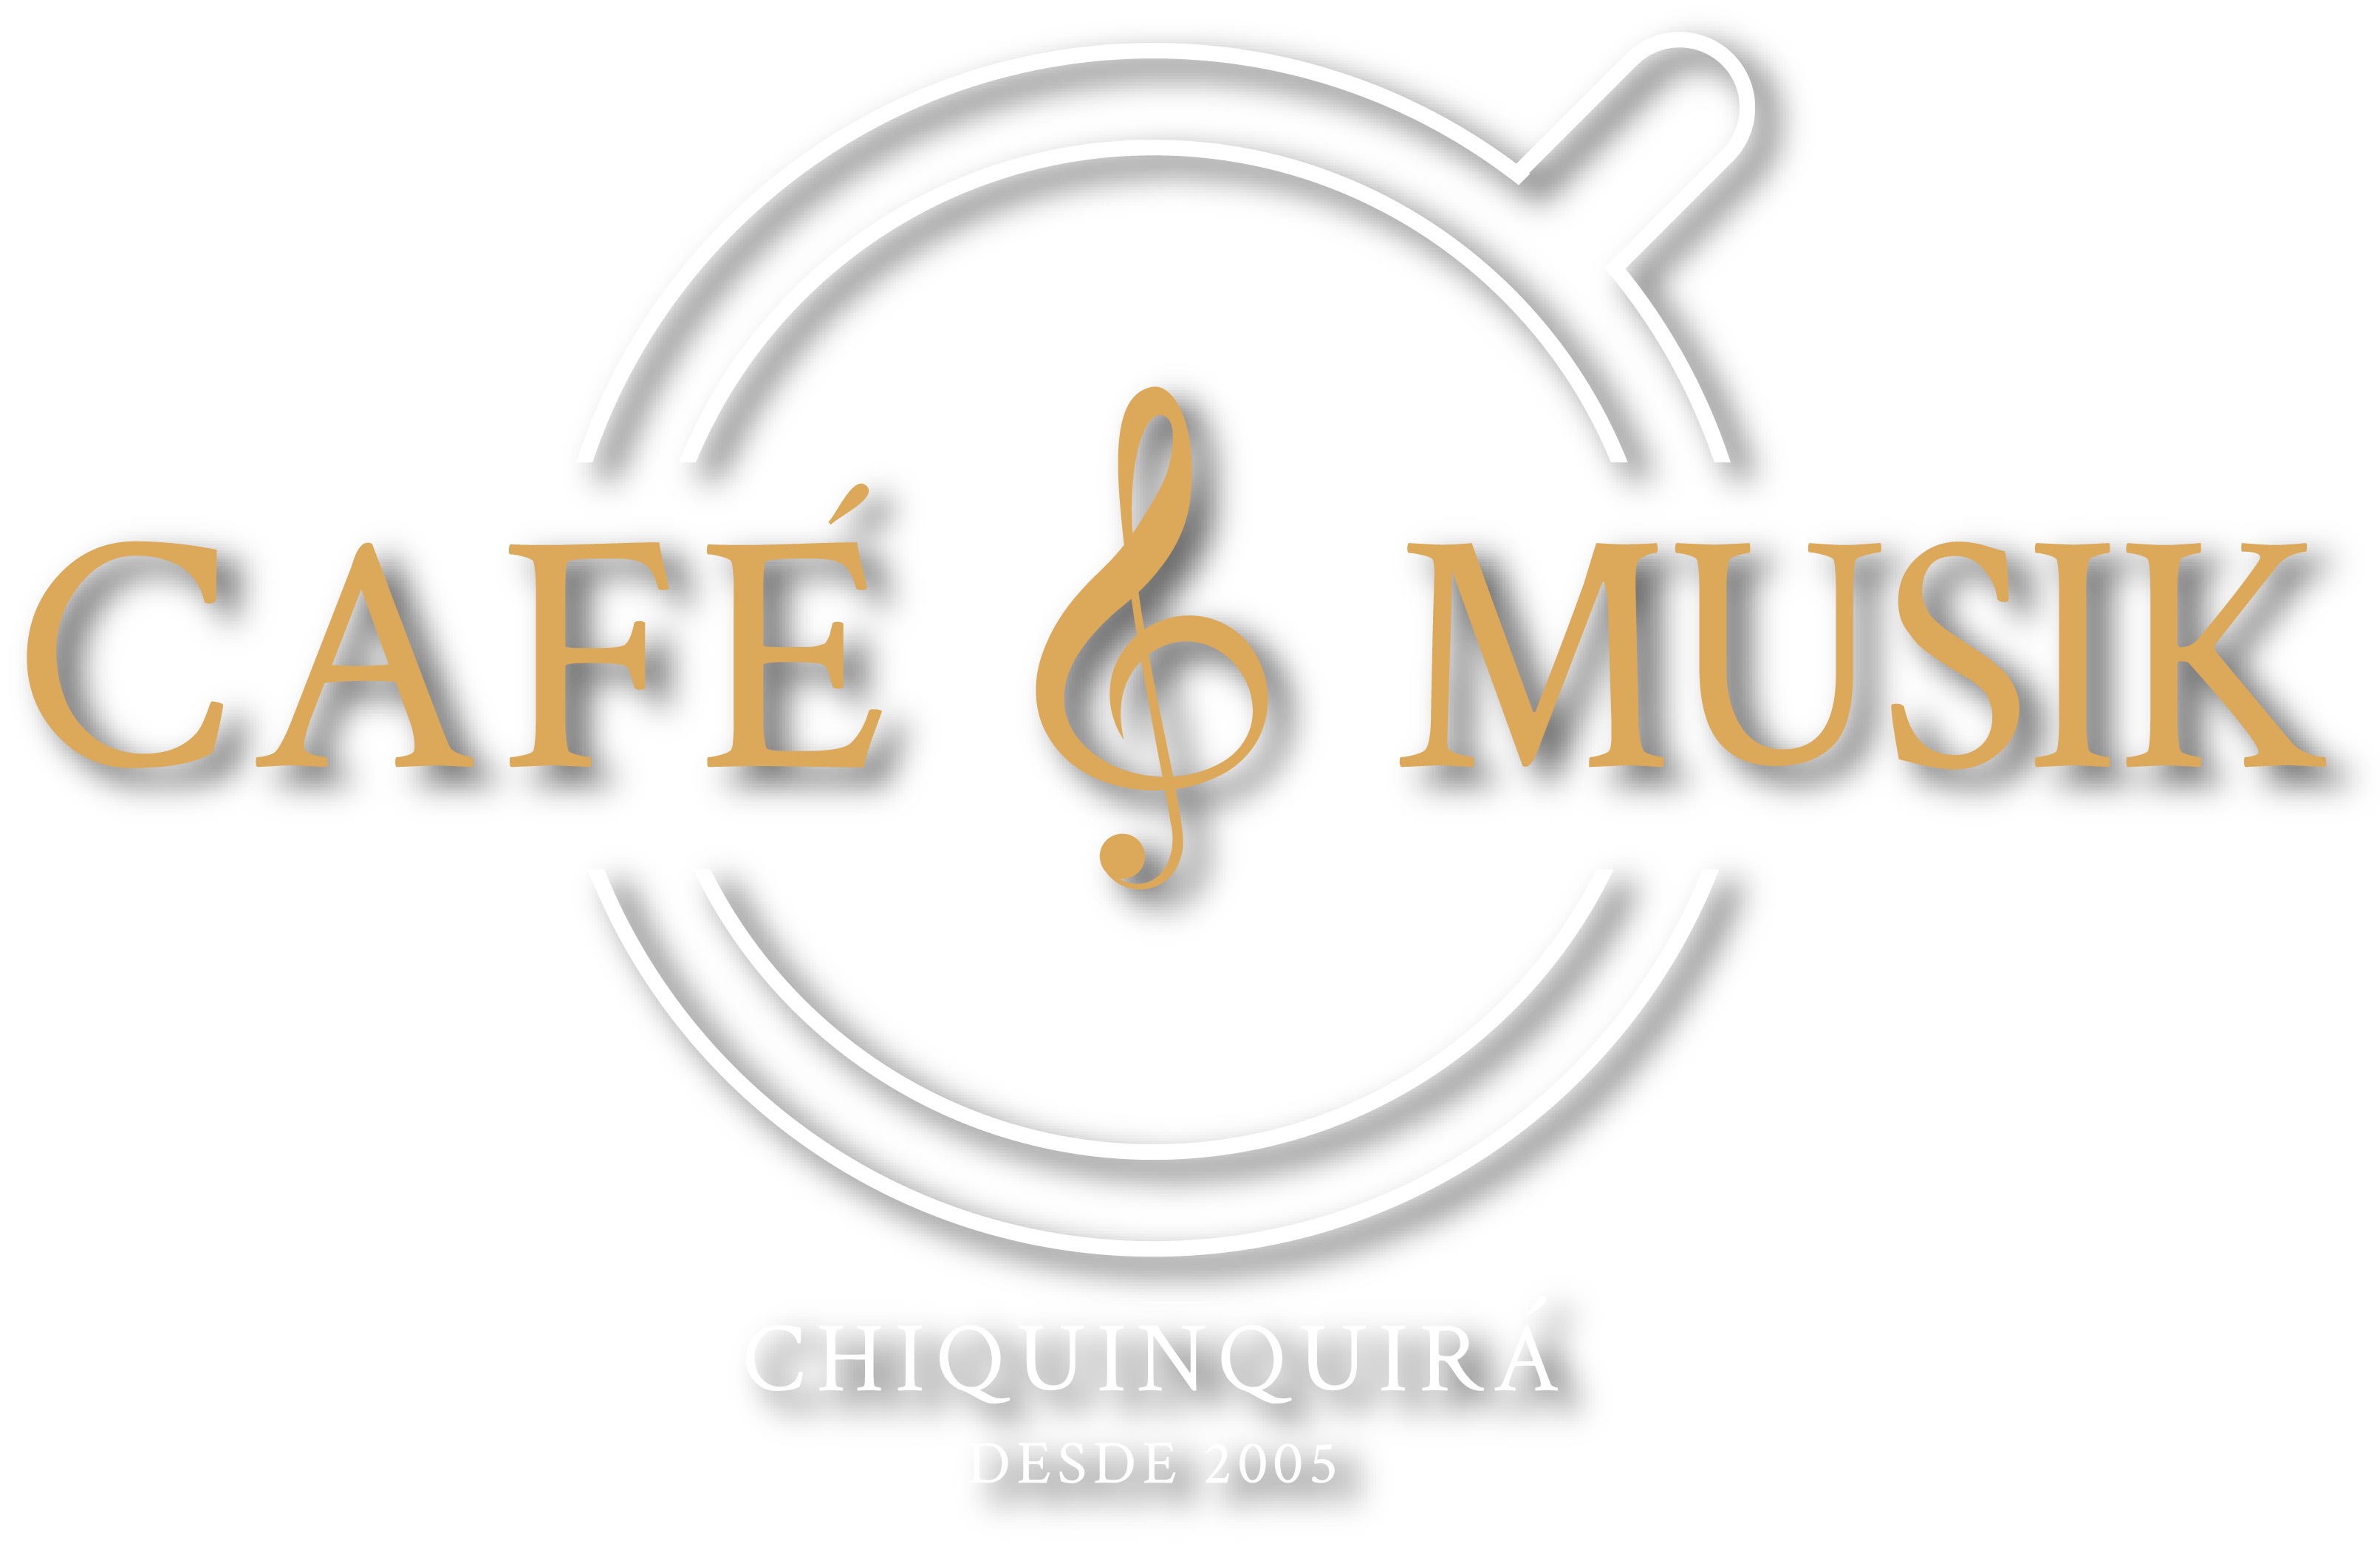 Café y musik en Chiquinquirá, el mejor café en frente a la basílica de Chiquinquirá